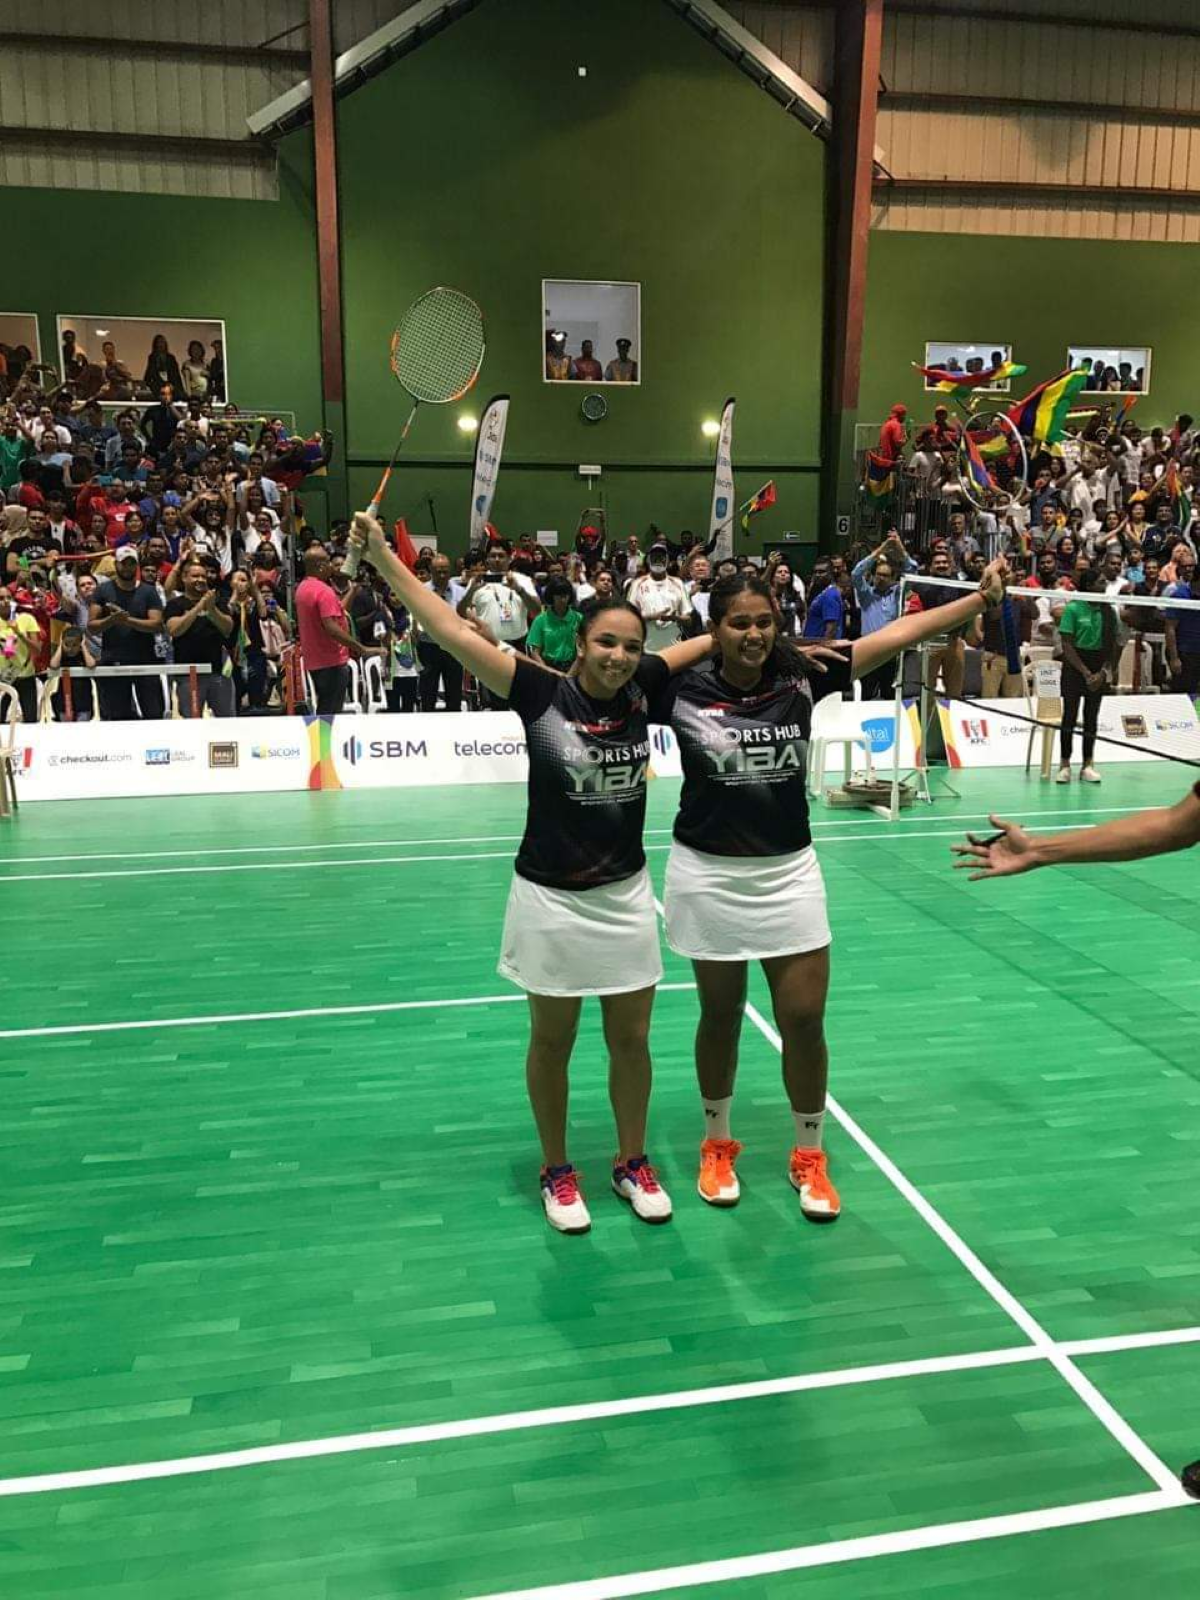 JIOI 2019- Badminton : Aurélie Allet - Kobita Dookhee remportent l'or en double dame